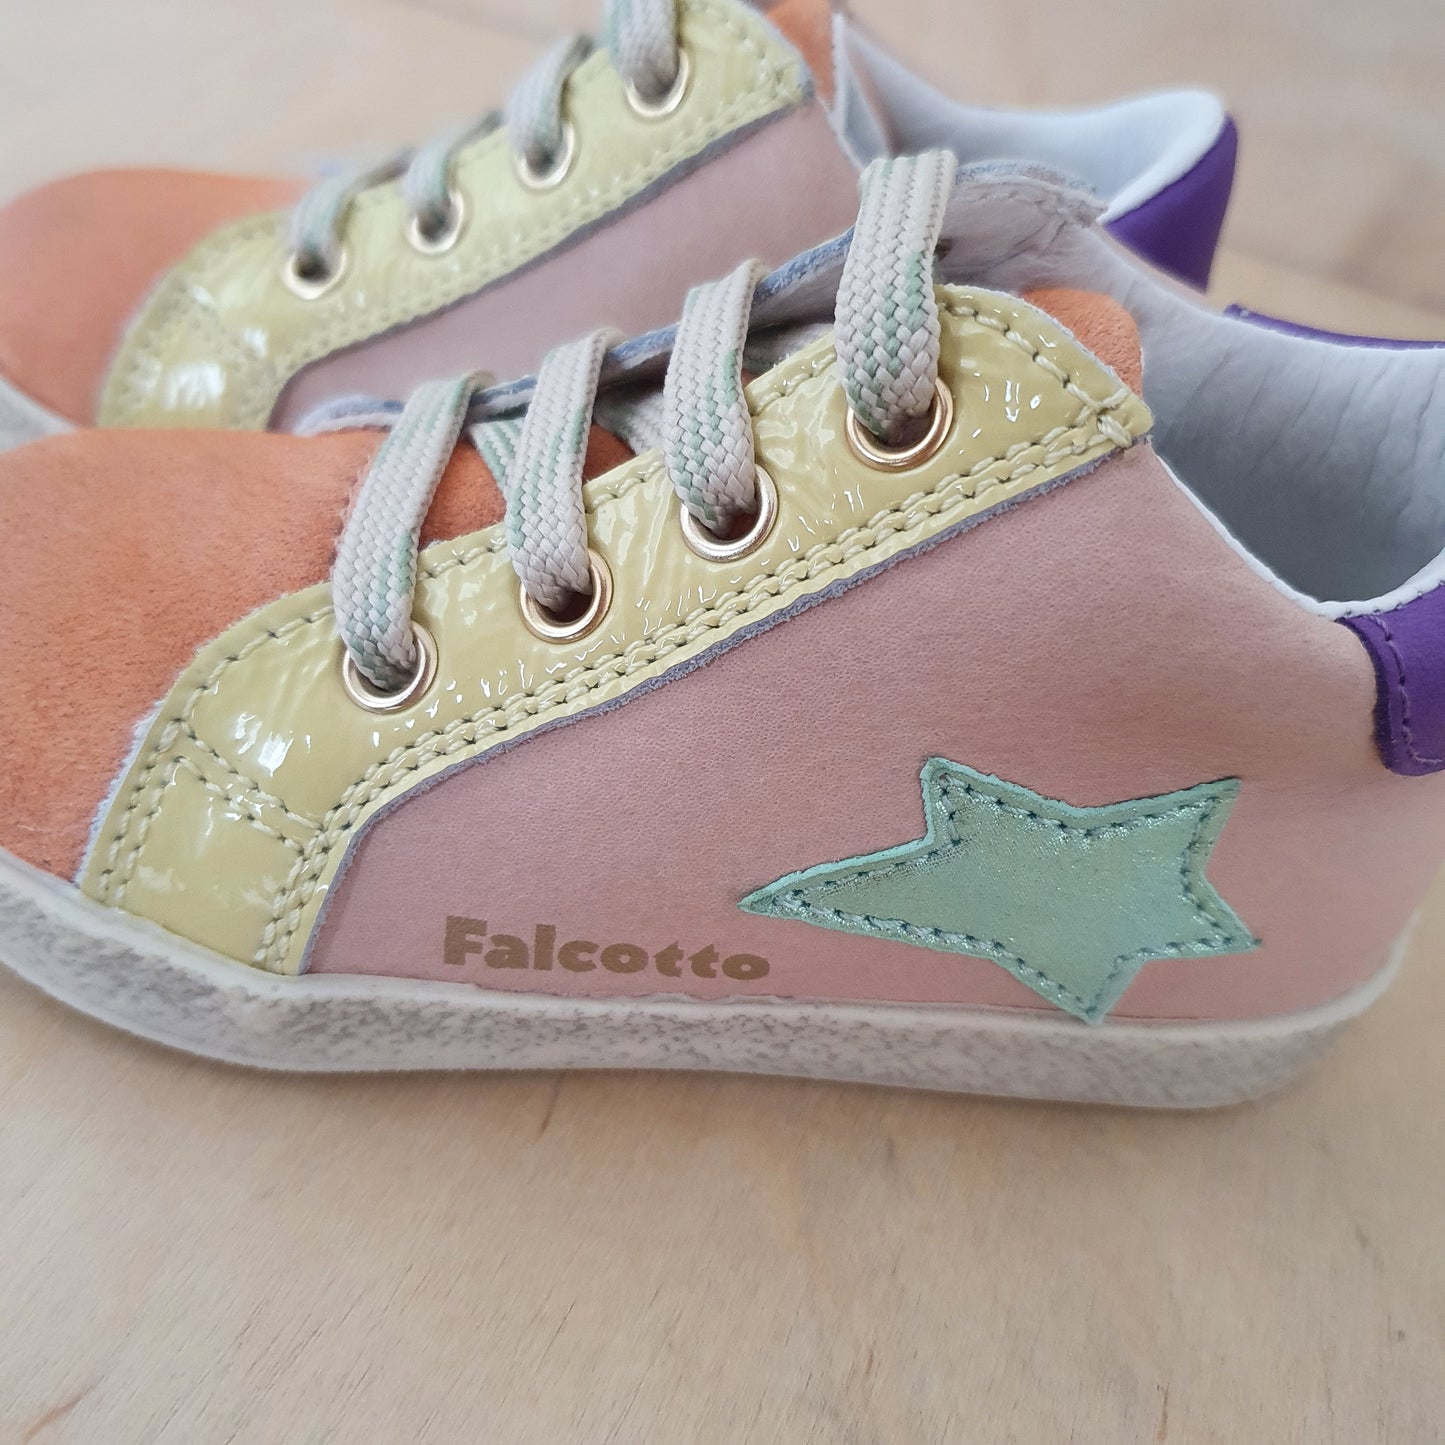 FALCOTTO - stapsneaker alnoite - salmon cipria purple